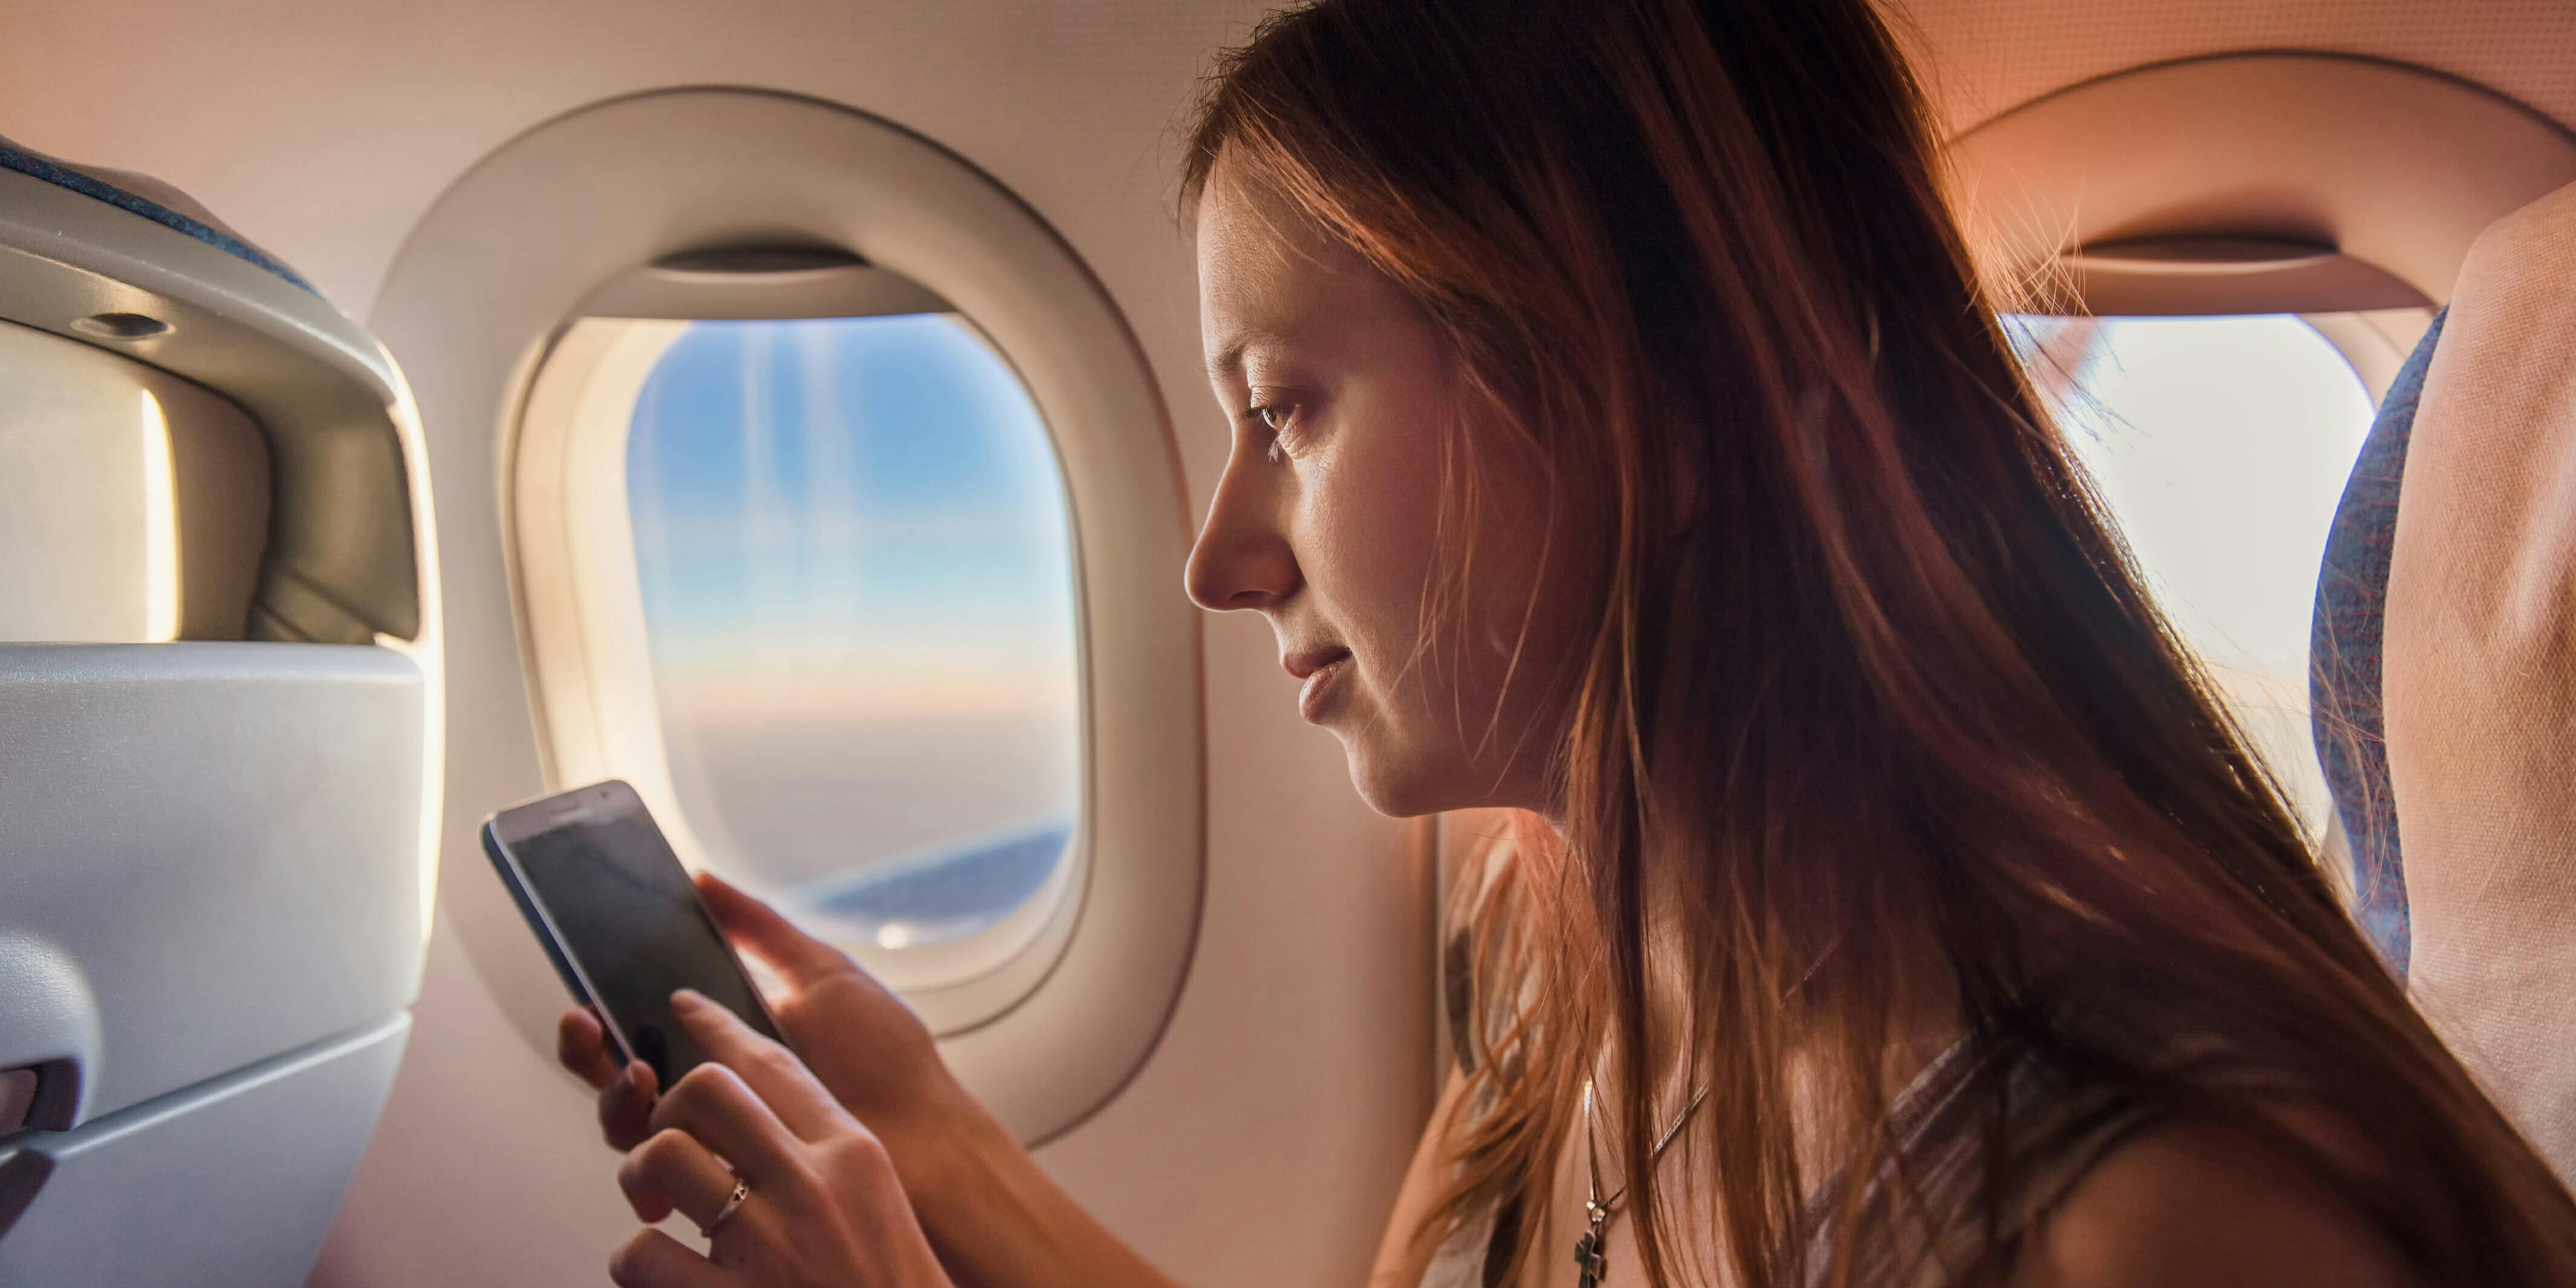 В самолетах можно зарядить телефон. Человек с телефоном в самолете. Мобильник в самолете. Самолет. Девушка с телефоном в самолете.